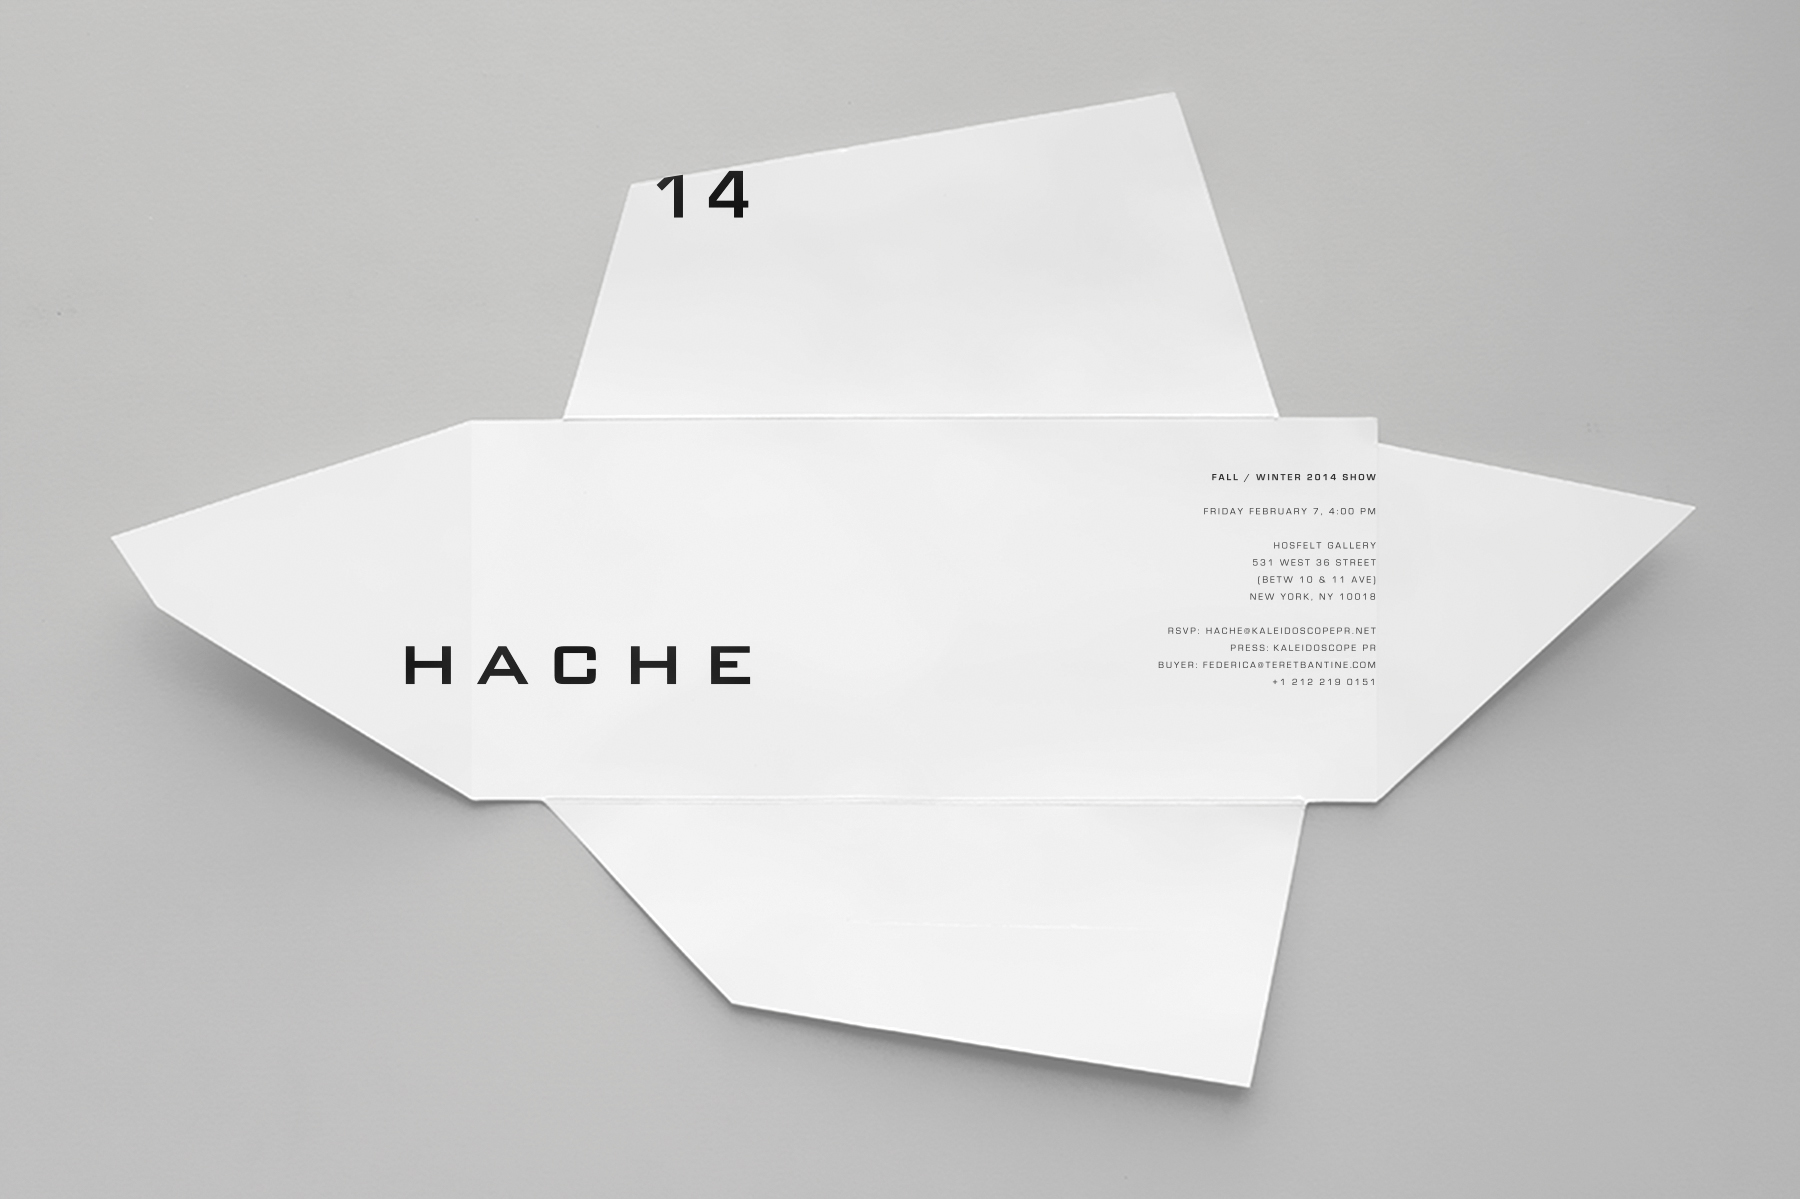 HACHE INVITE3